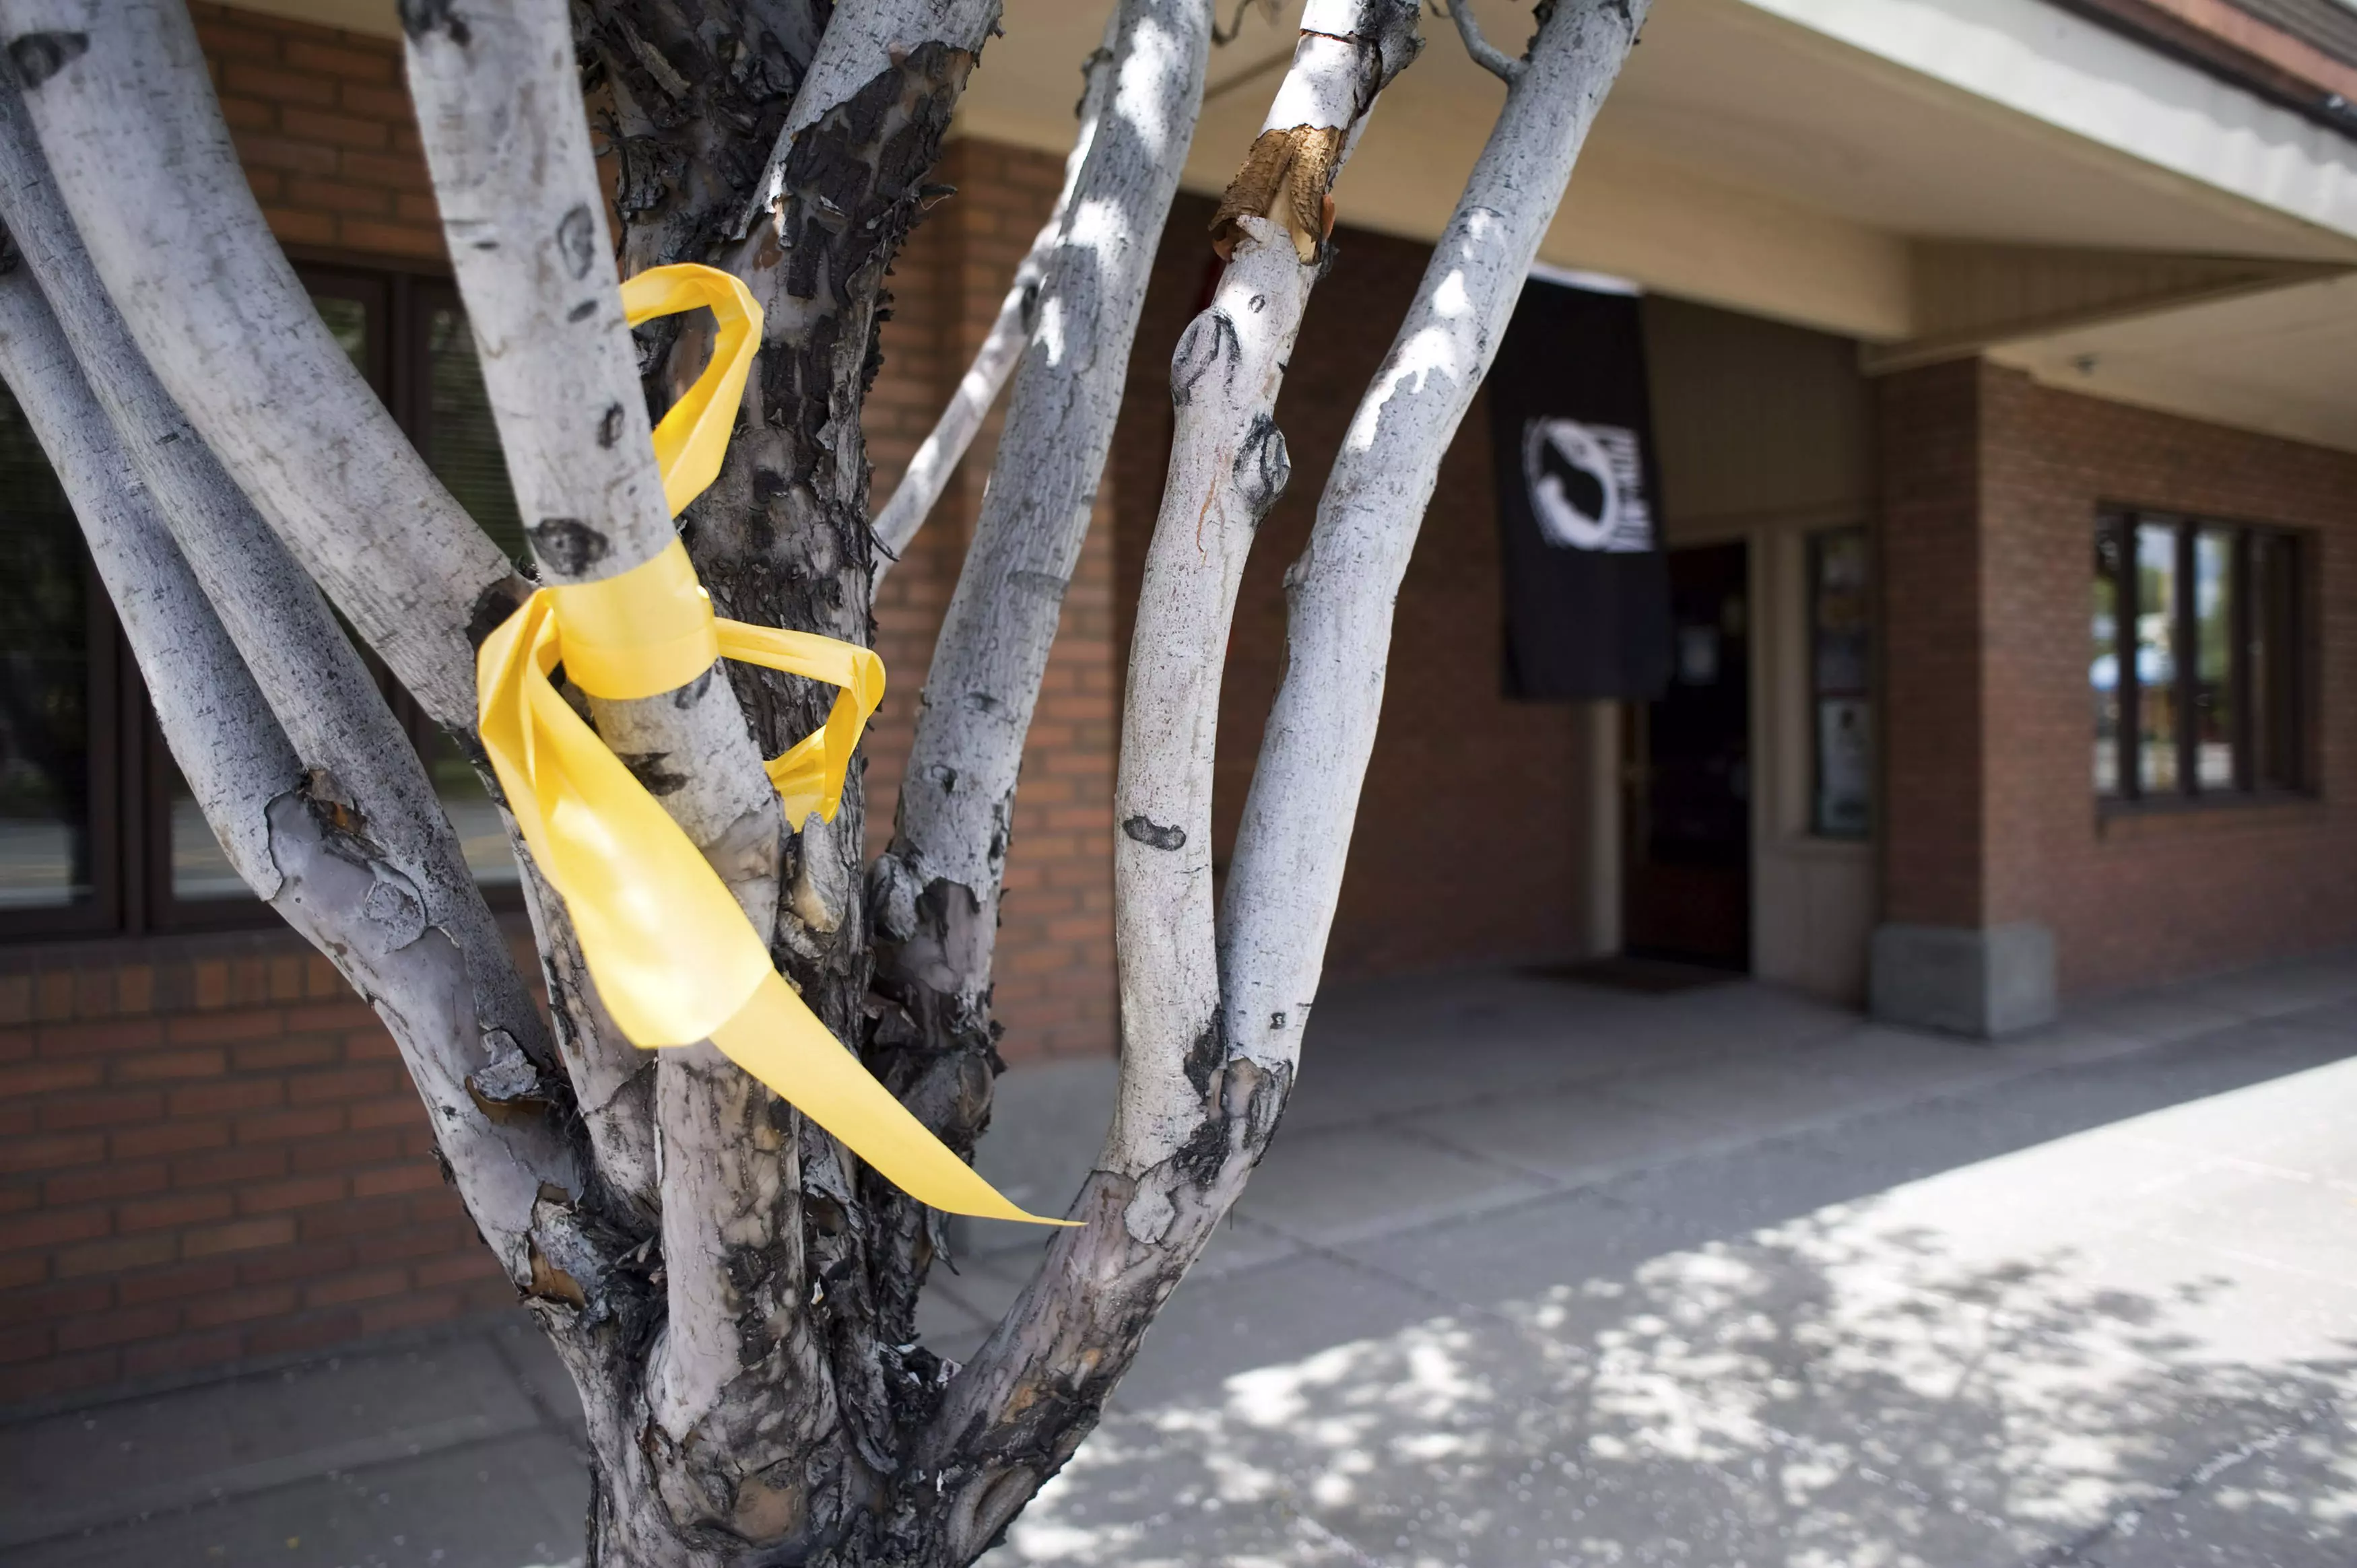 סרט צהוב, סמל תמיכה בחייל המשוחרר, על עץ בעיר הולדתו של ברגדאל